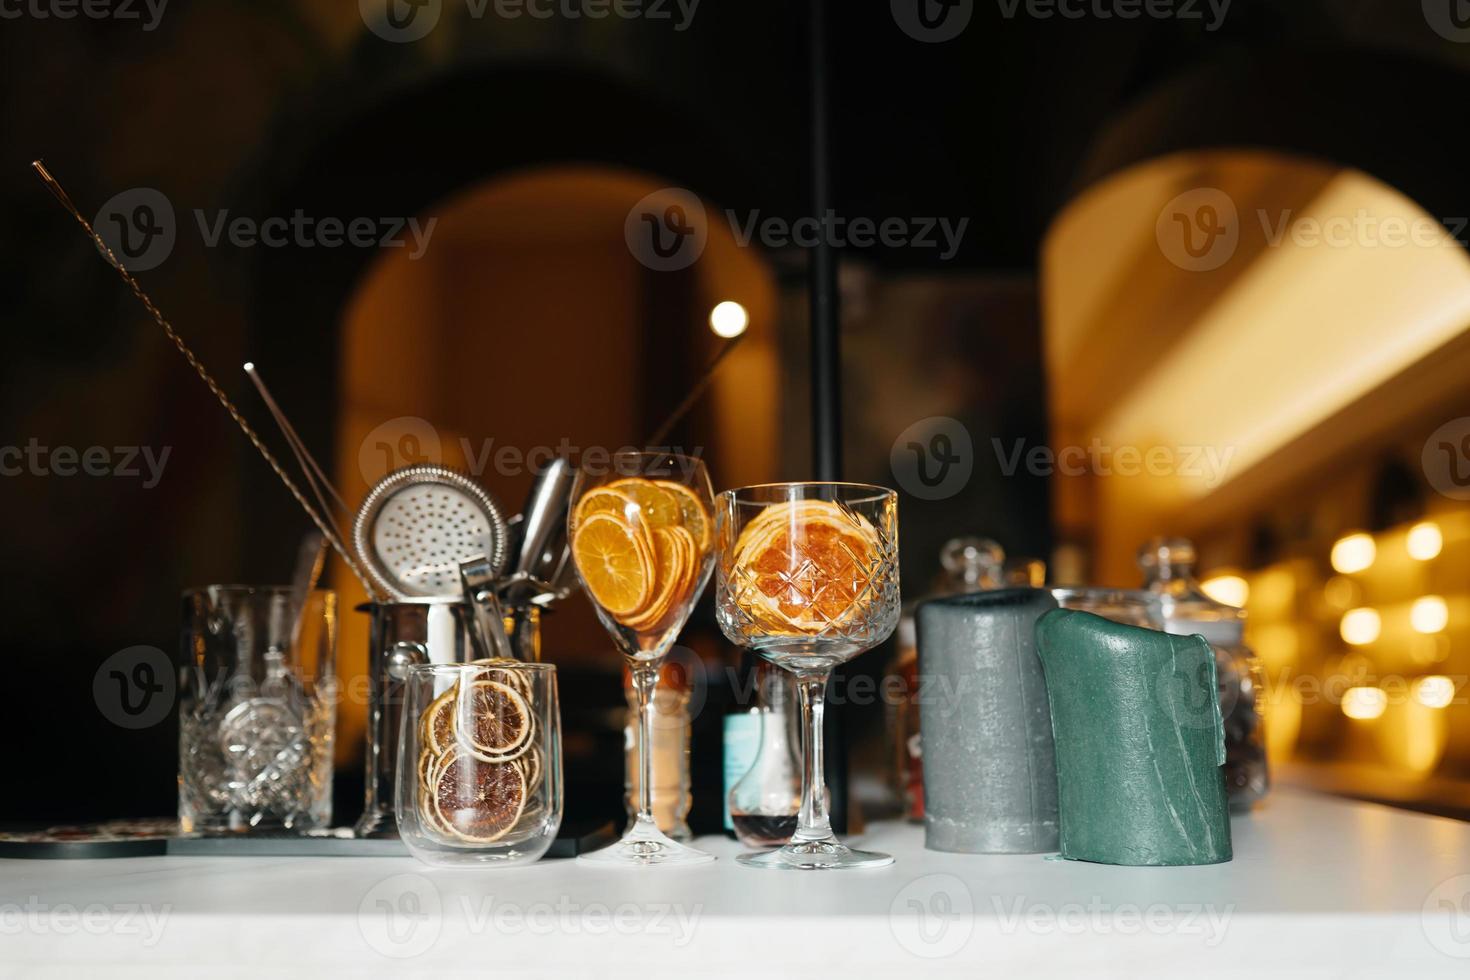 quatre tasses en verre sur le comptoir du bar avec accessoires de service. photo